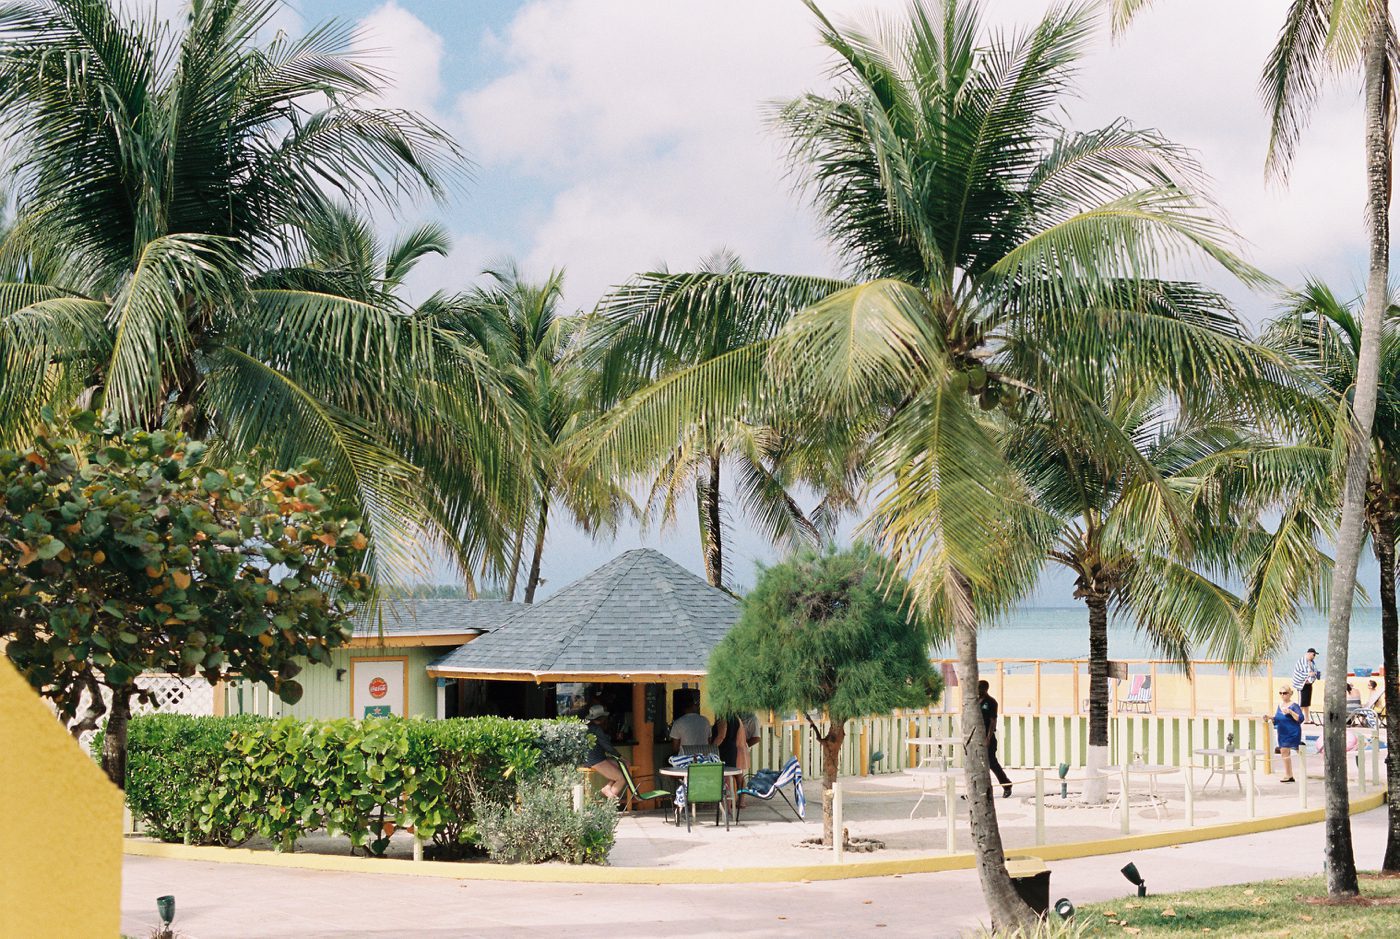 nassau-bahamas-photos-portra-400-film-016